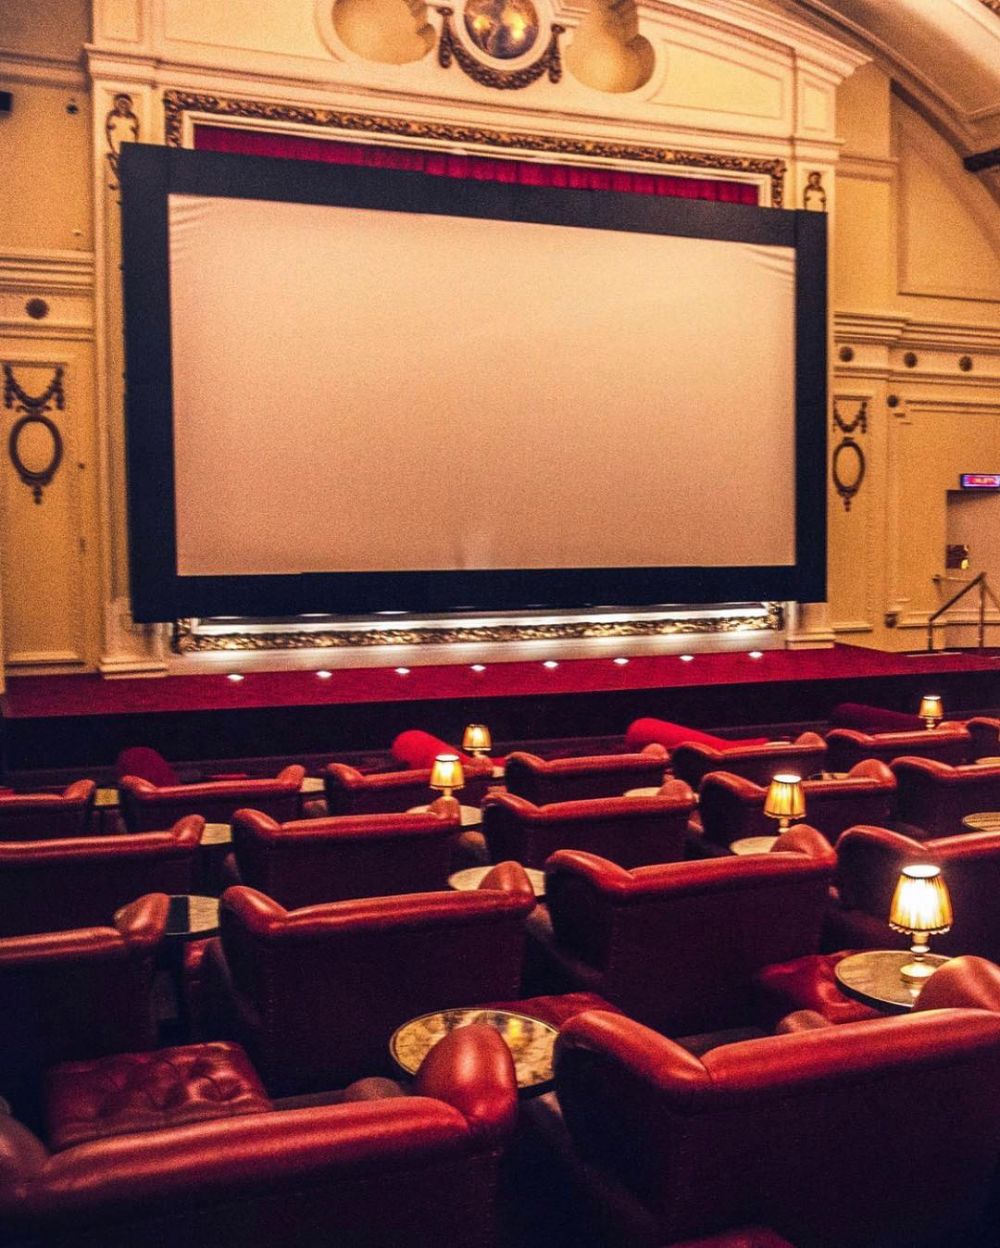 5 Bioskop Termewah di Dunia, Tingkatkan Kualitas Menonton Film